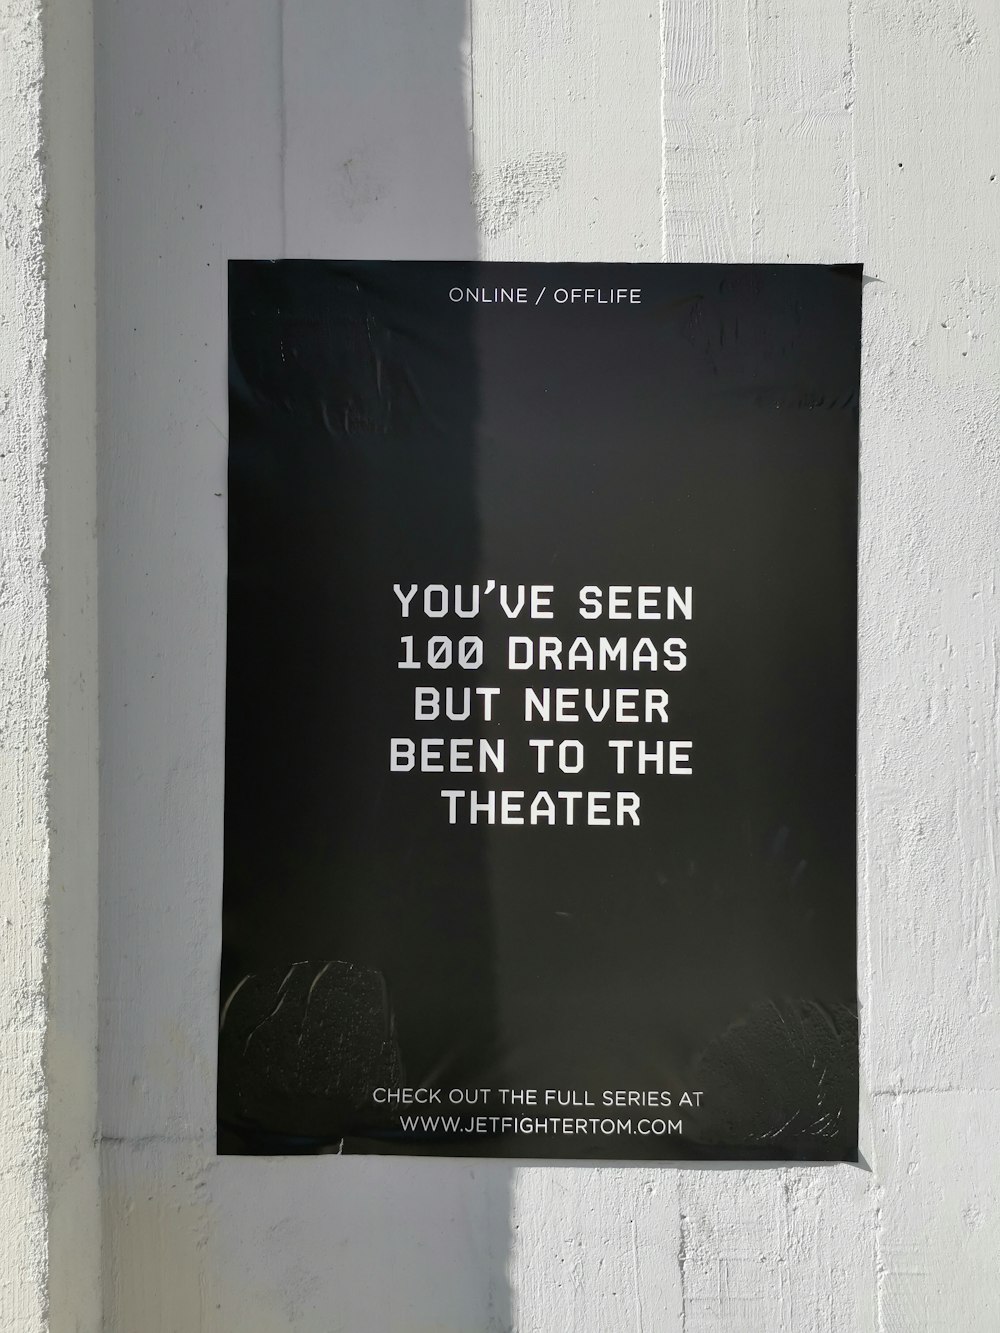 Hai visto 100 DRAM ma non sei mai stato al poster del teatro